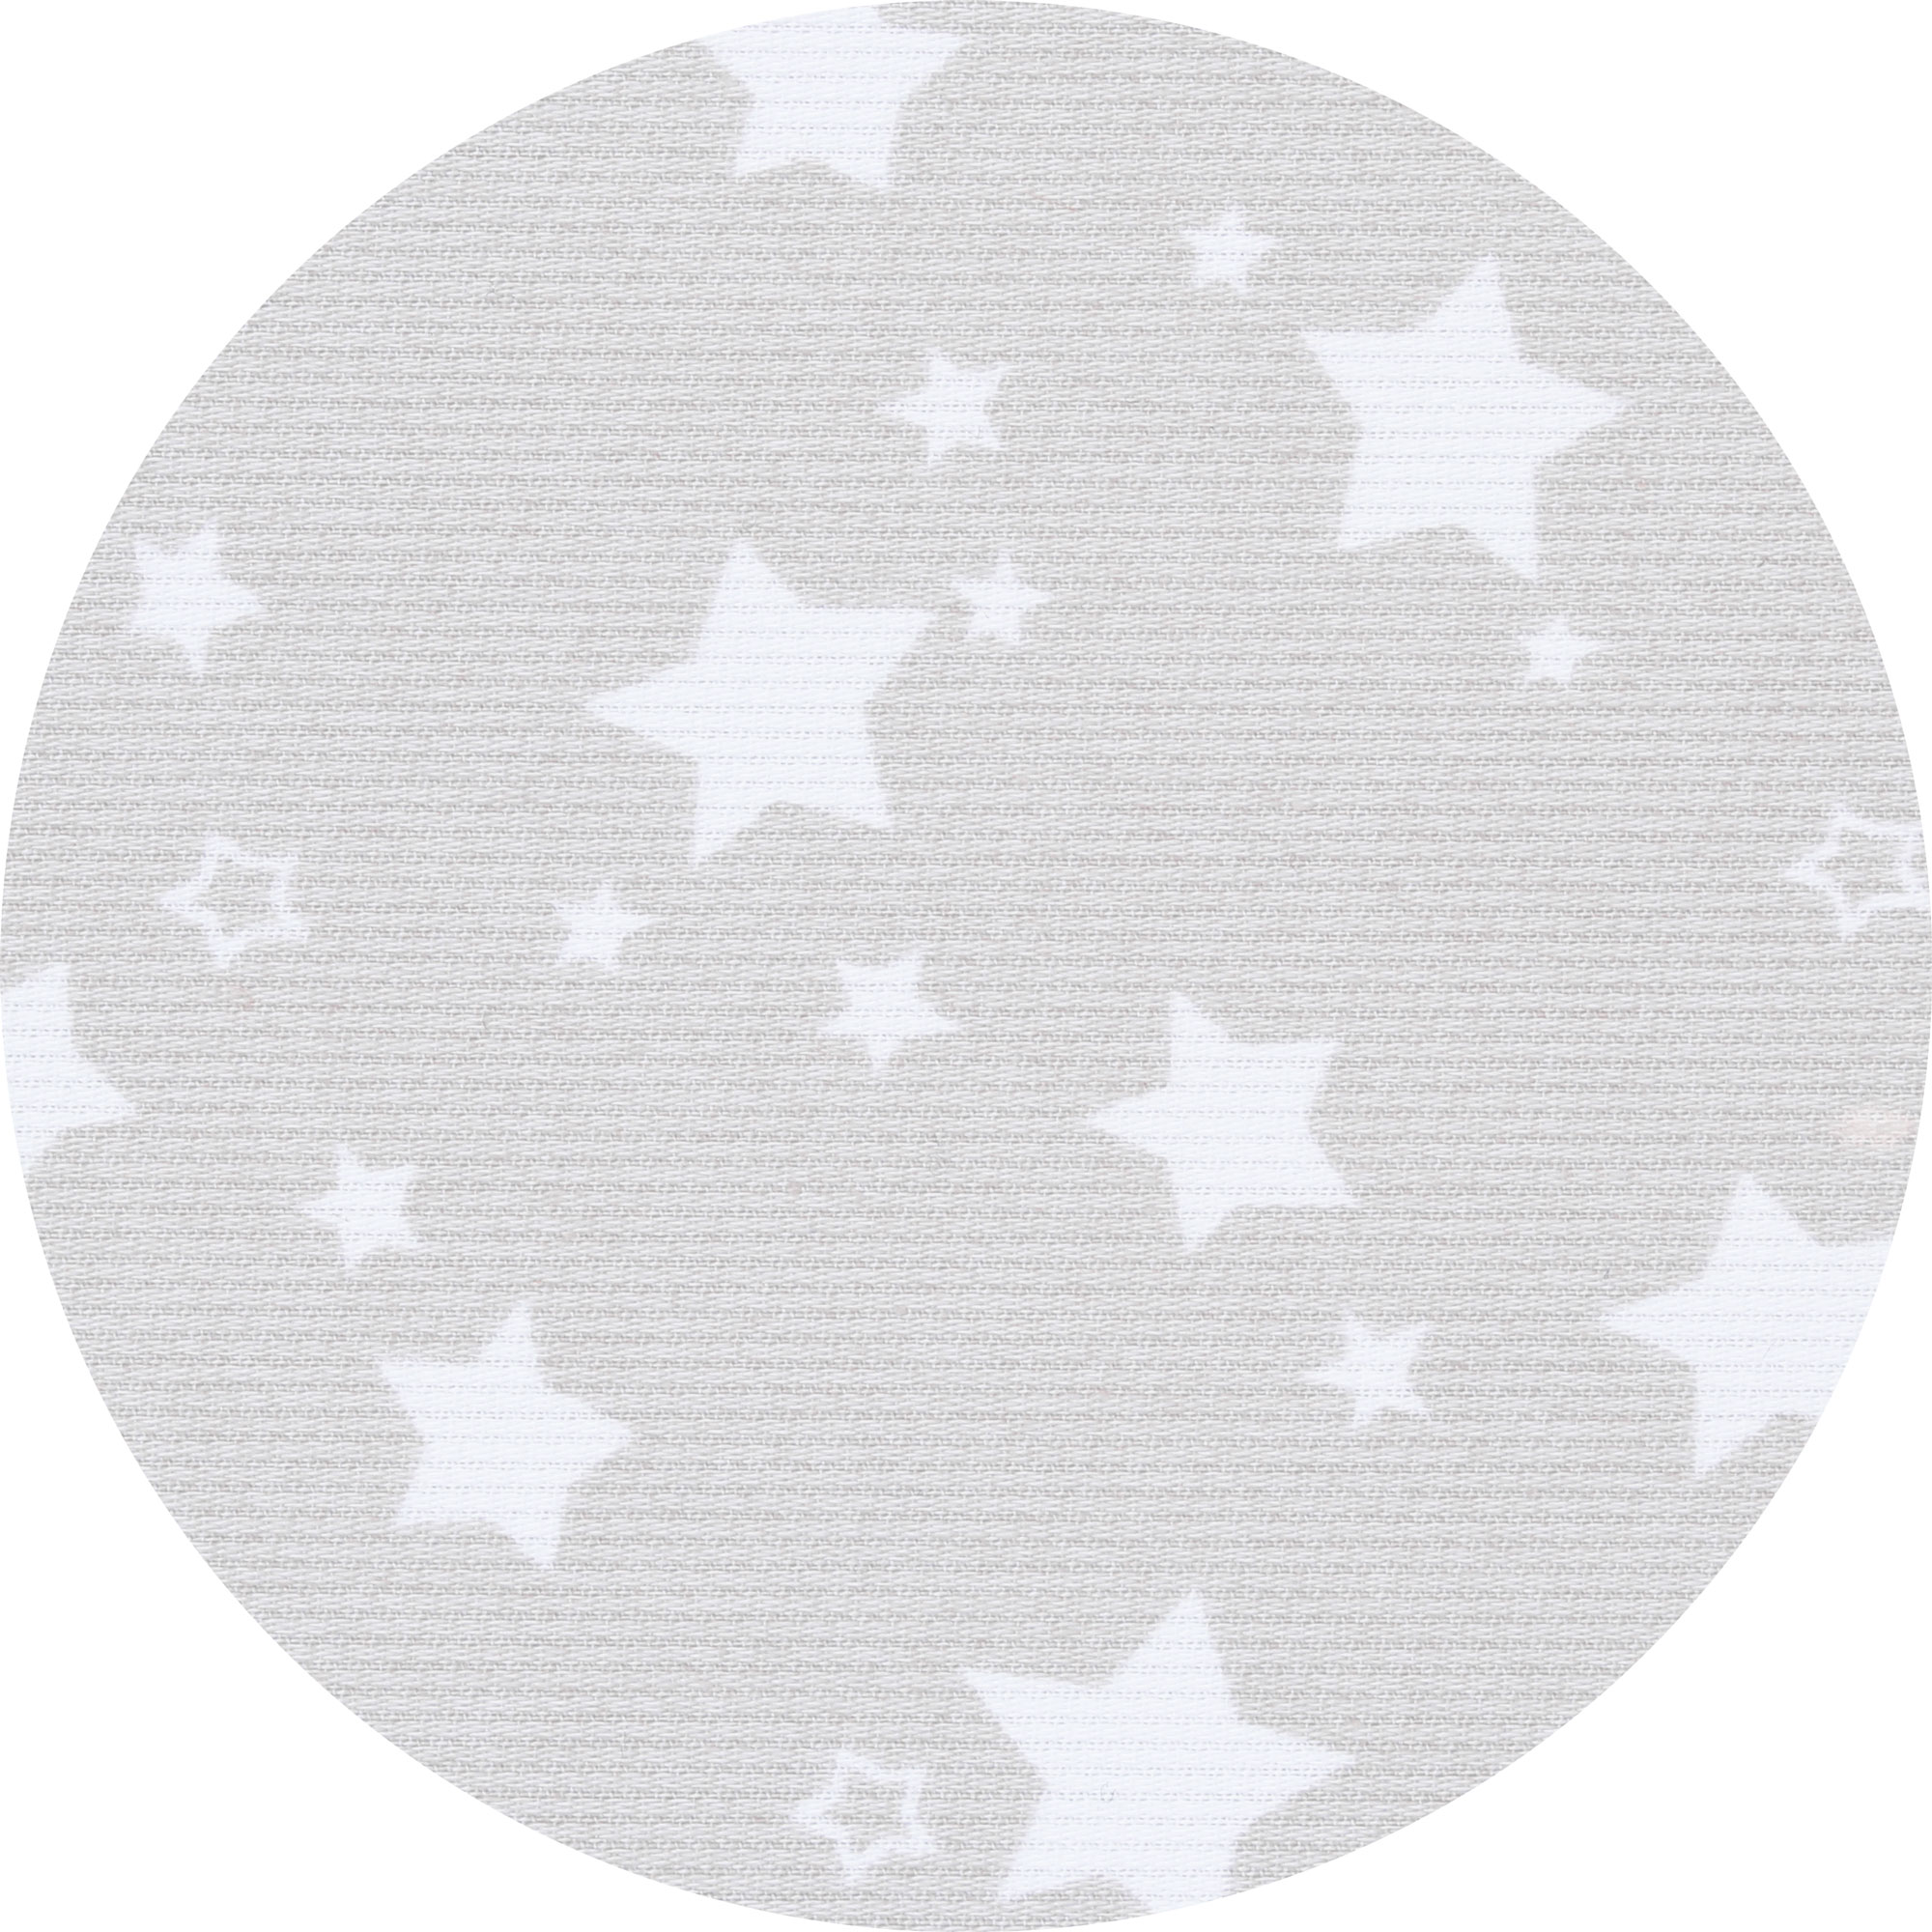 Nestchenschlange Sterne babybay Grau 2000571374102 8